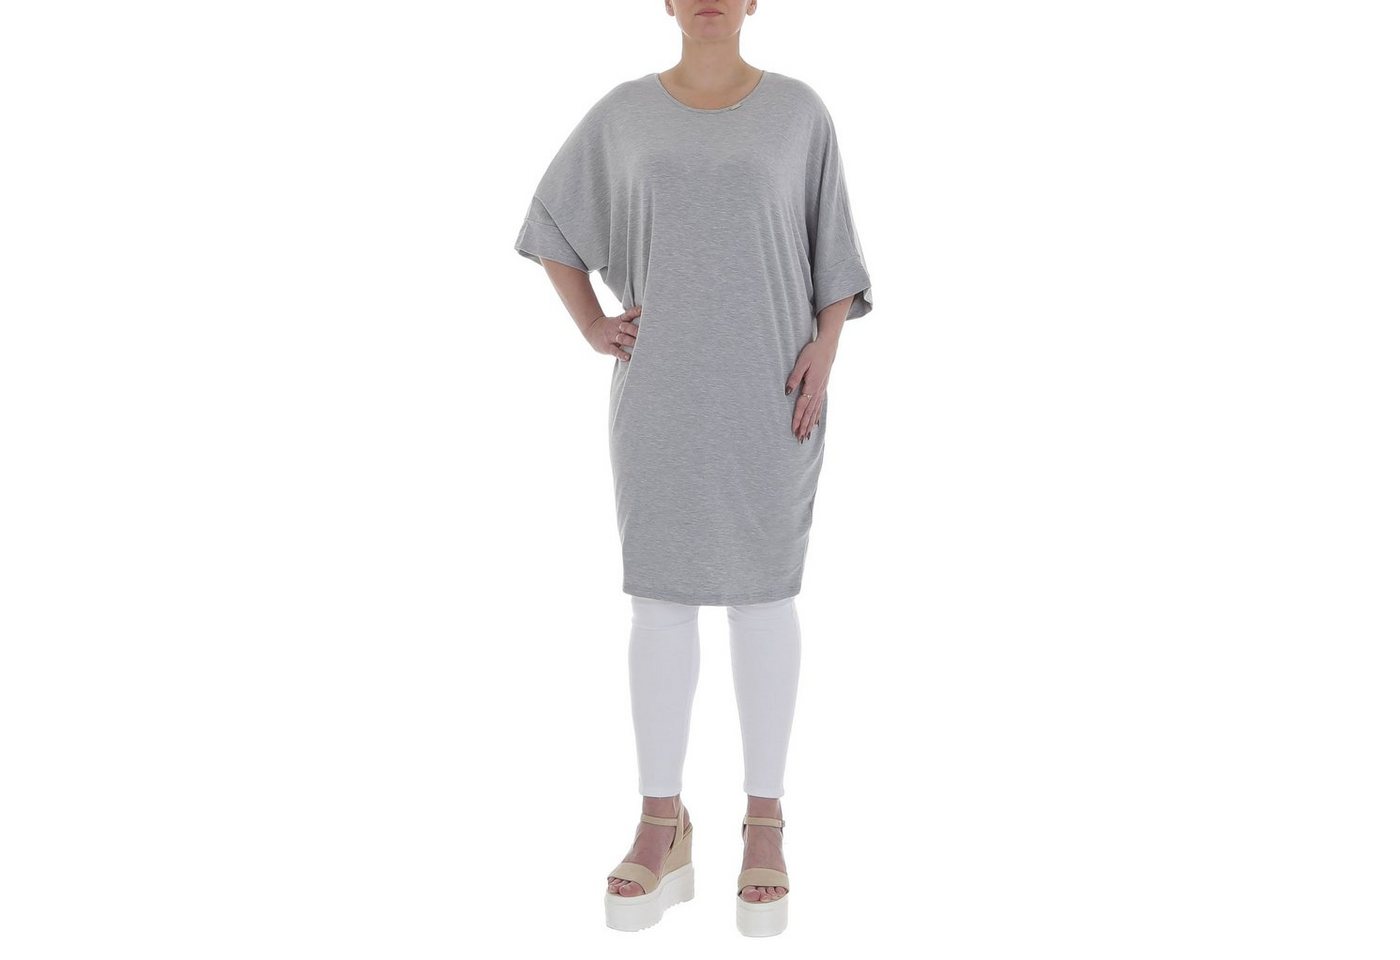 Ital-Design Tunikashirt Damen Freizeit Top & Shirt in Grau von Ital-Design